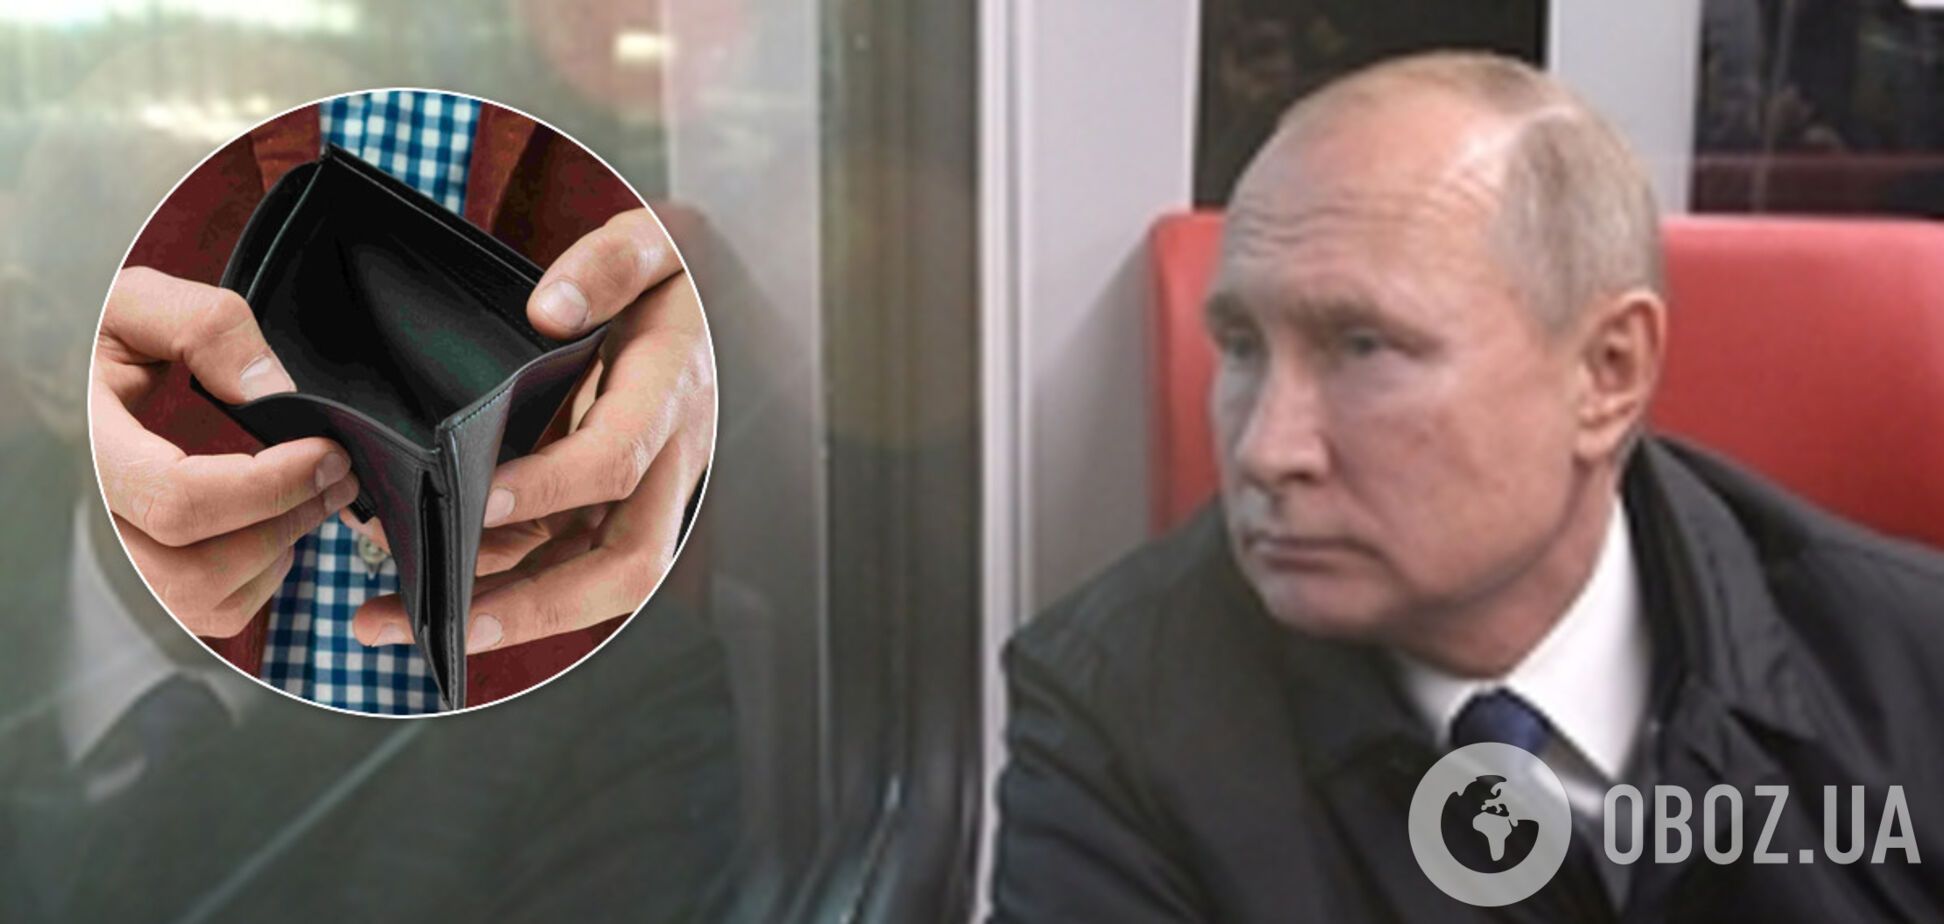 'Очень трудно': Путин пожаловался народу на маленькую зарплату. Видео